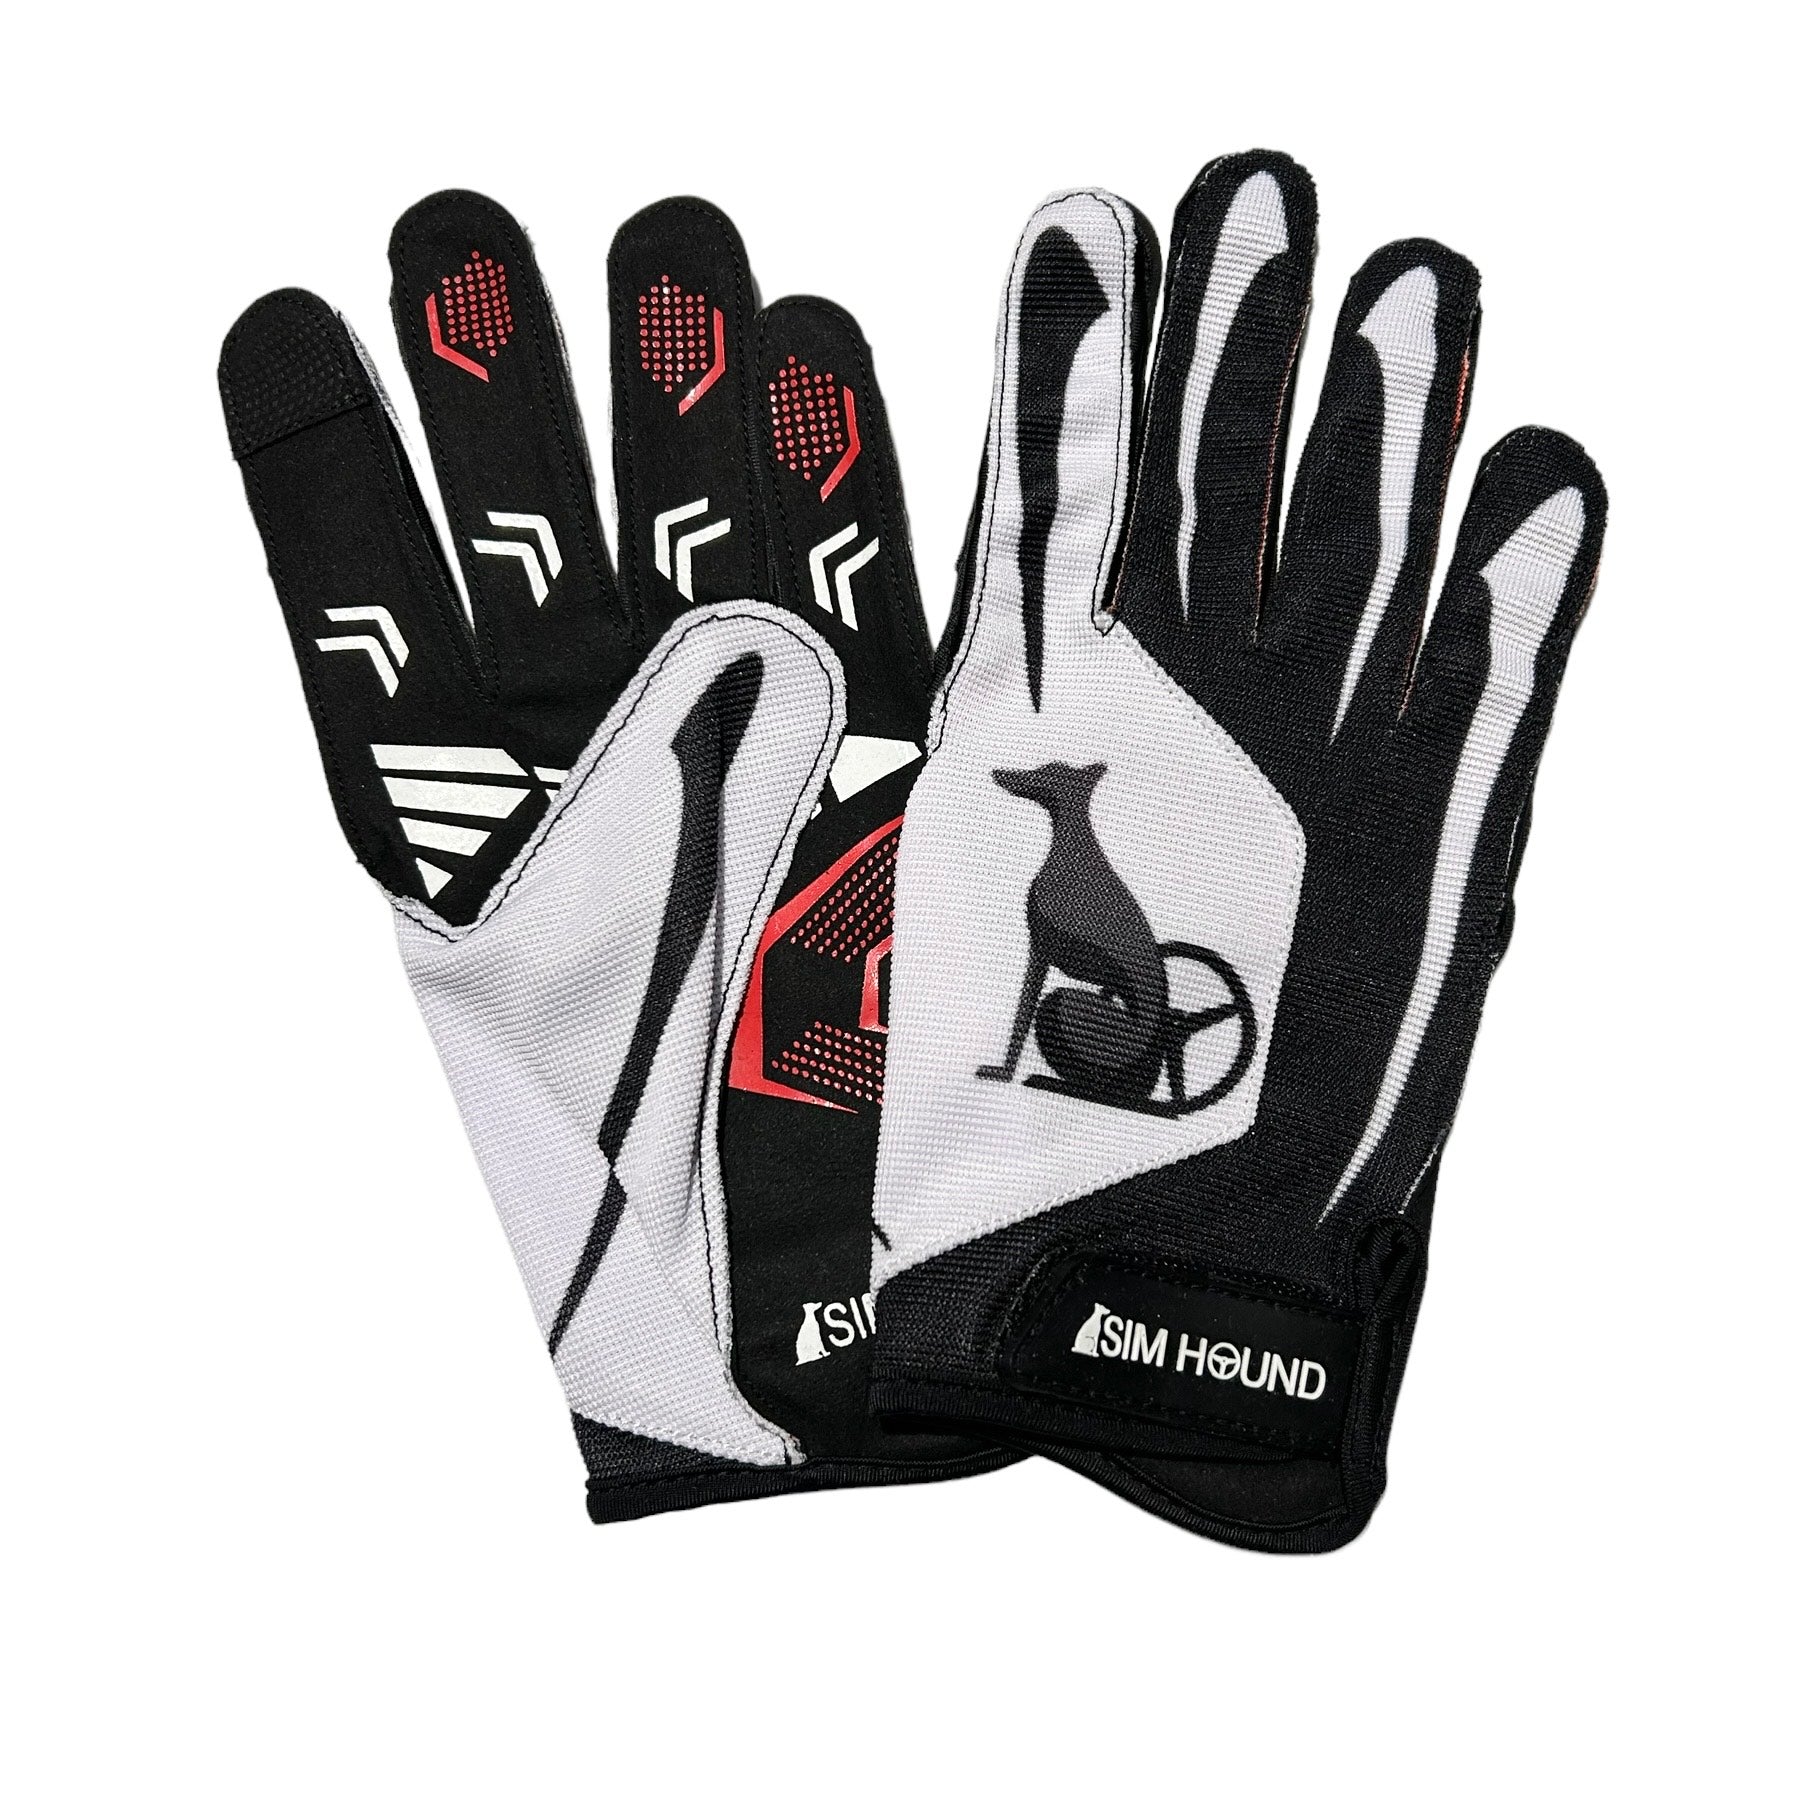 Sim Hound Gloves - External Stitching - Black & White